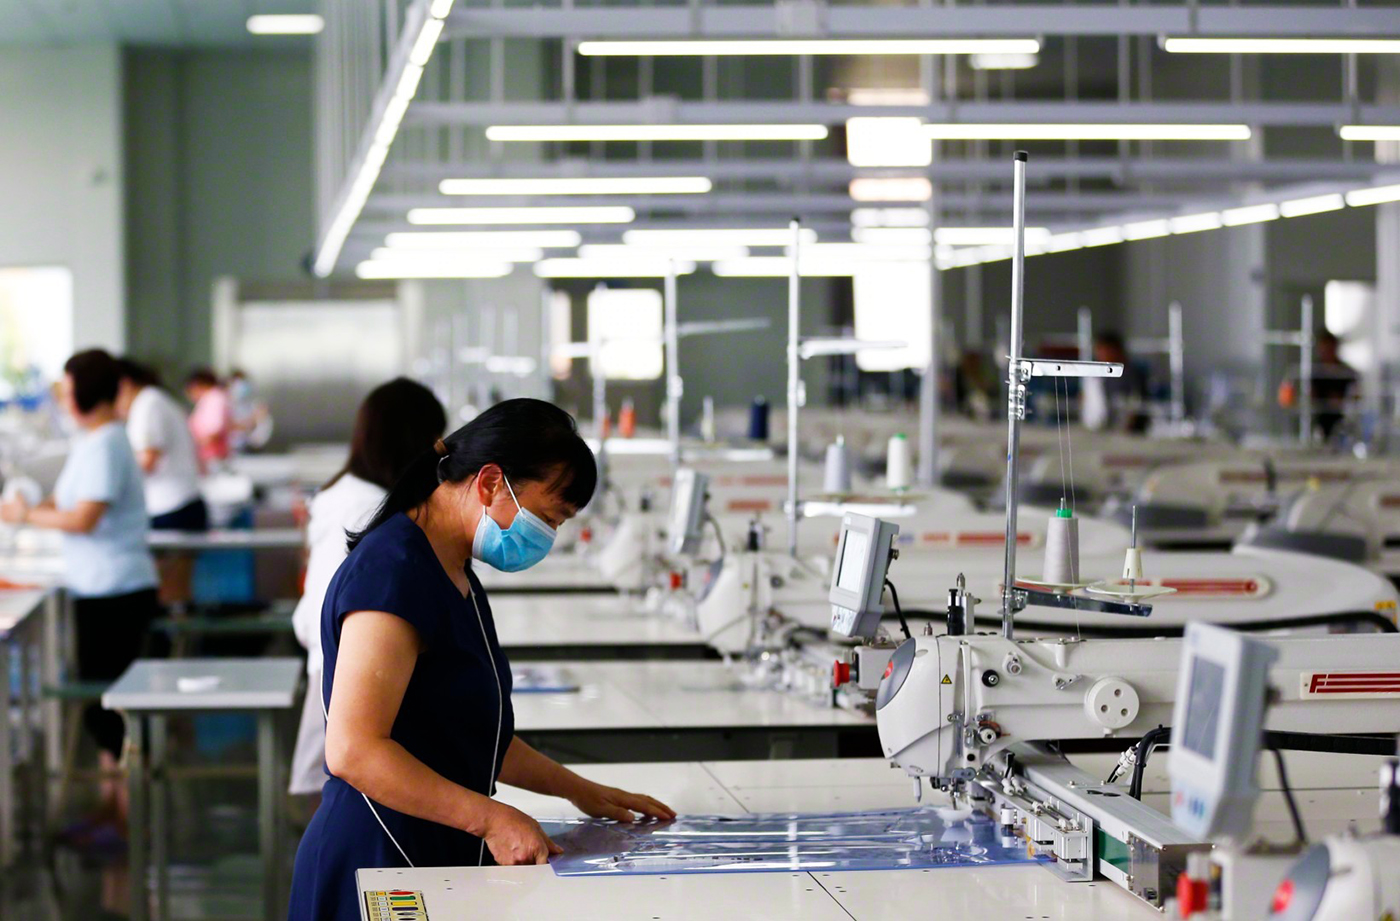 8月21日,在泗洪经济开发区一服装有限公司数字化生产车间内,工人正在